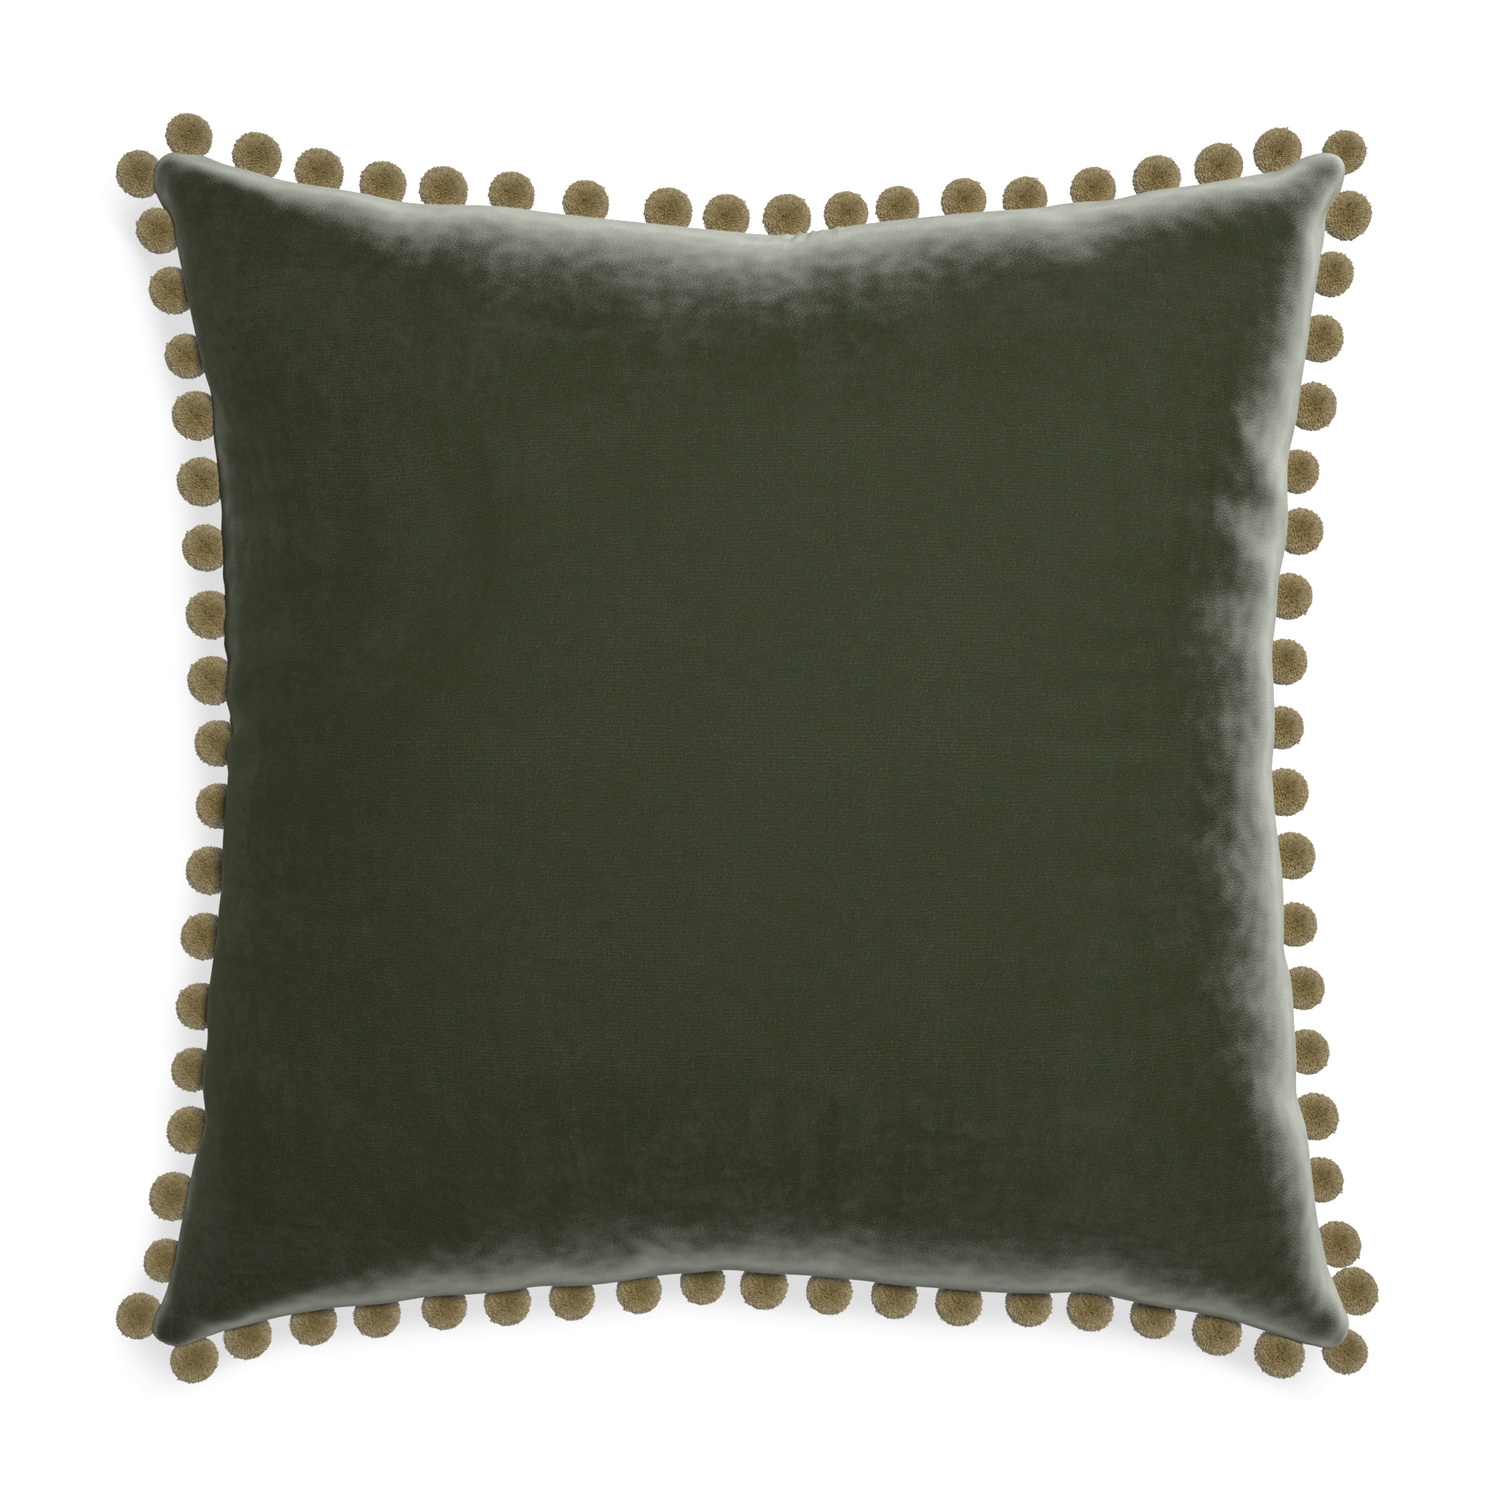 Euro-sham fern velvet custom pillow with olive pom pom on white background